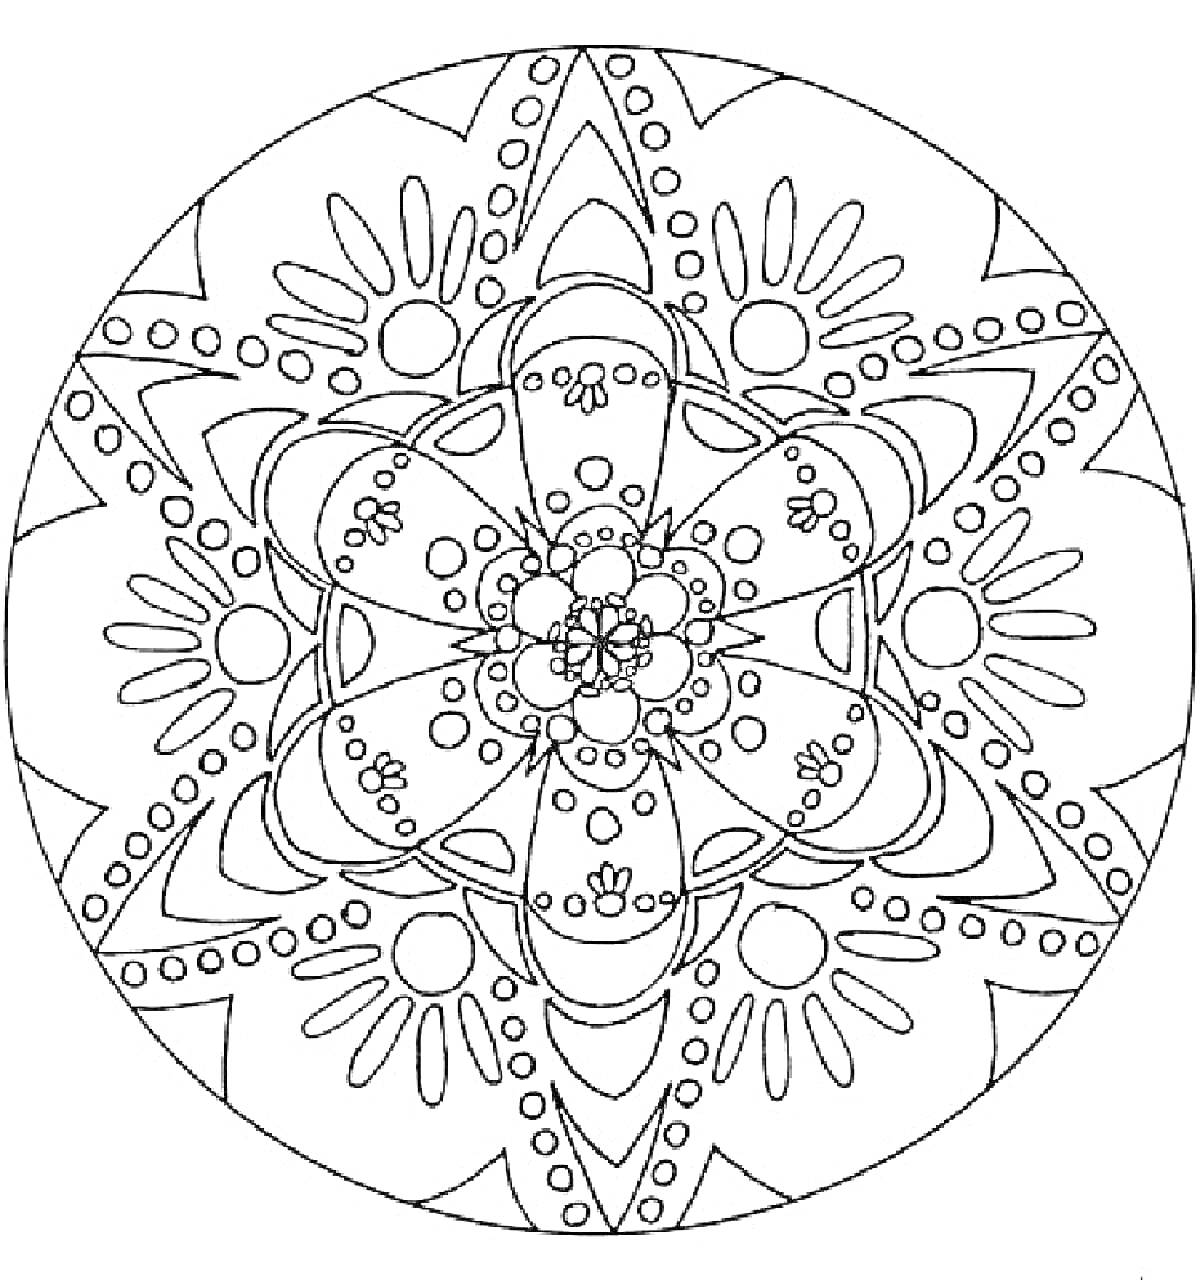 Мандала с эллипсами, кругами и цветочными элементами на тему Нового года